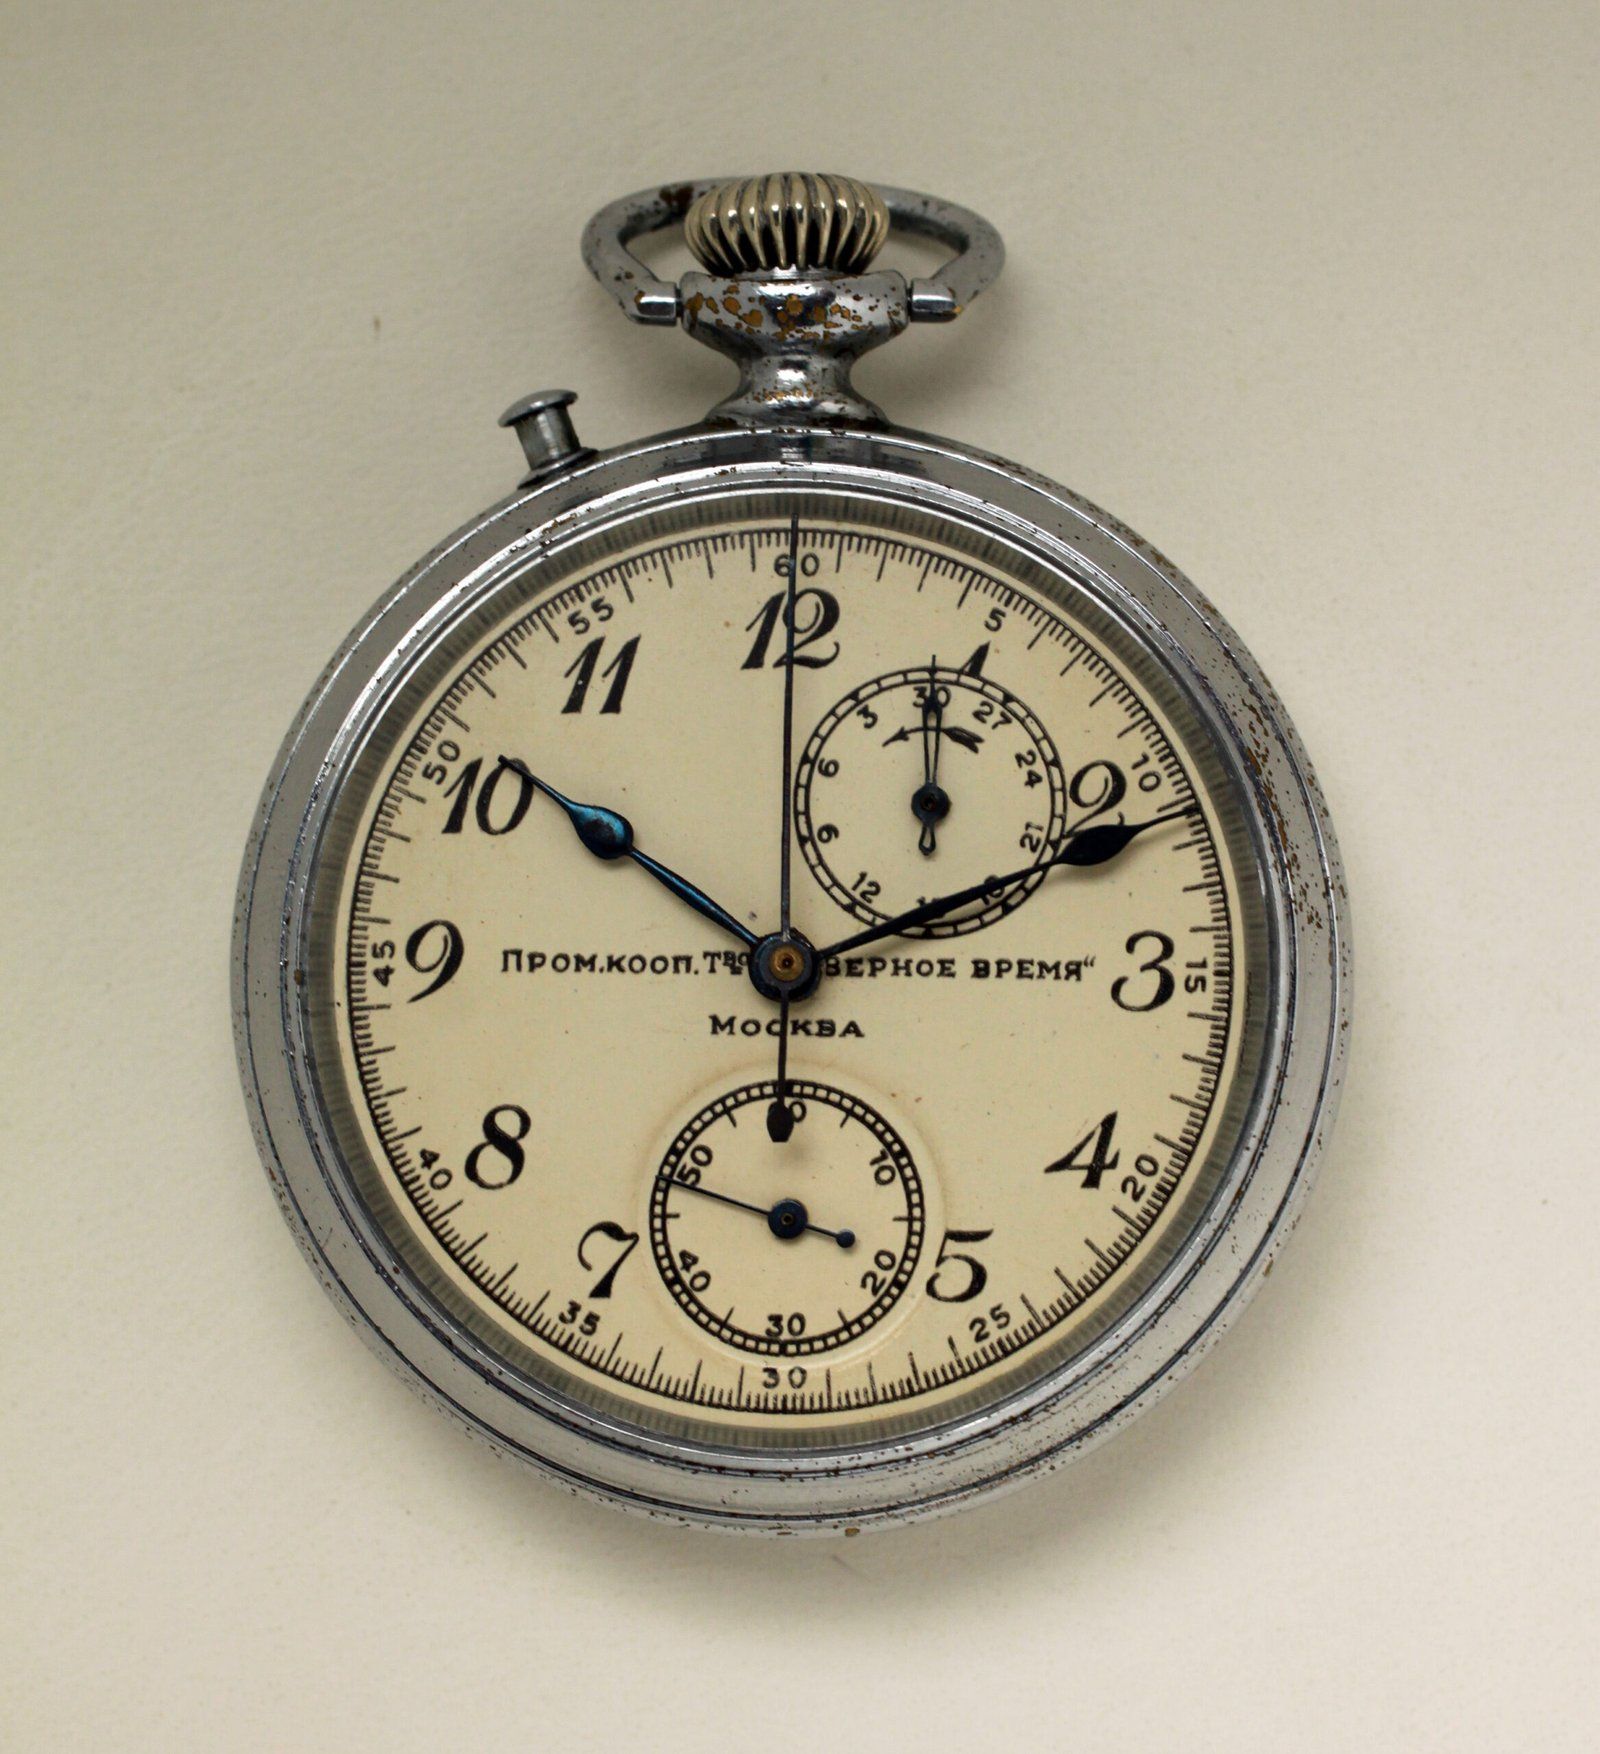 Artel monopusher chronograph ( First chronograph type) (Courtesy: Yuri Kravtsov; Instagram: sovietwatchmuseum)